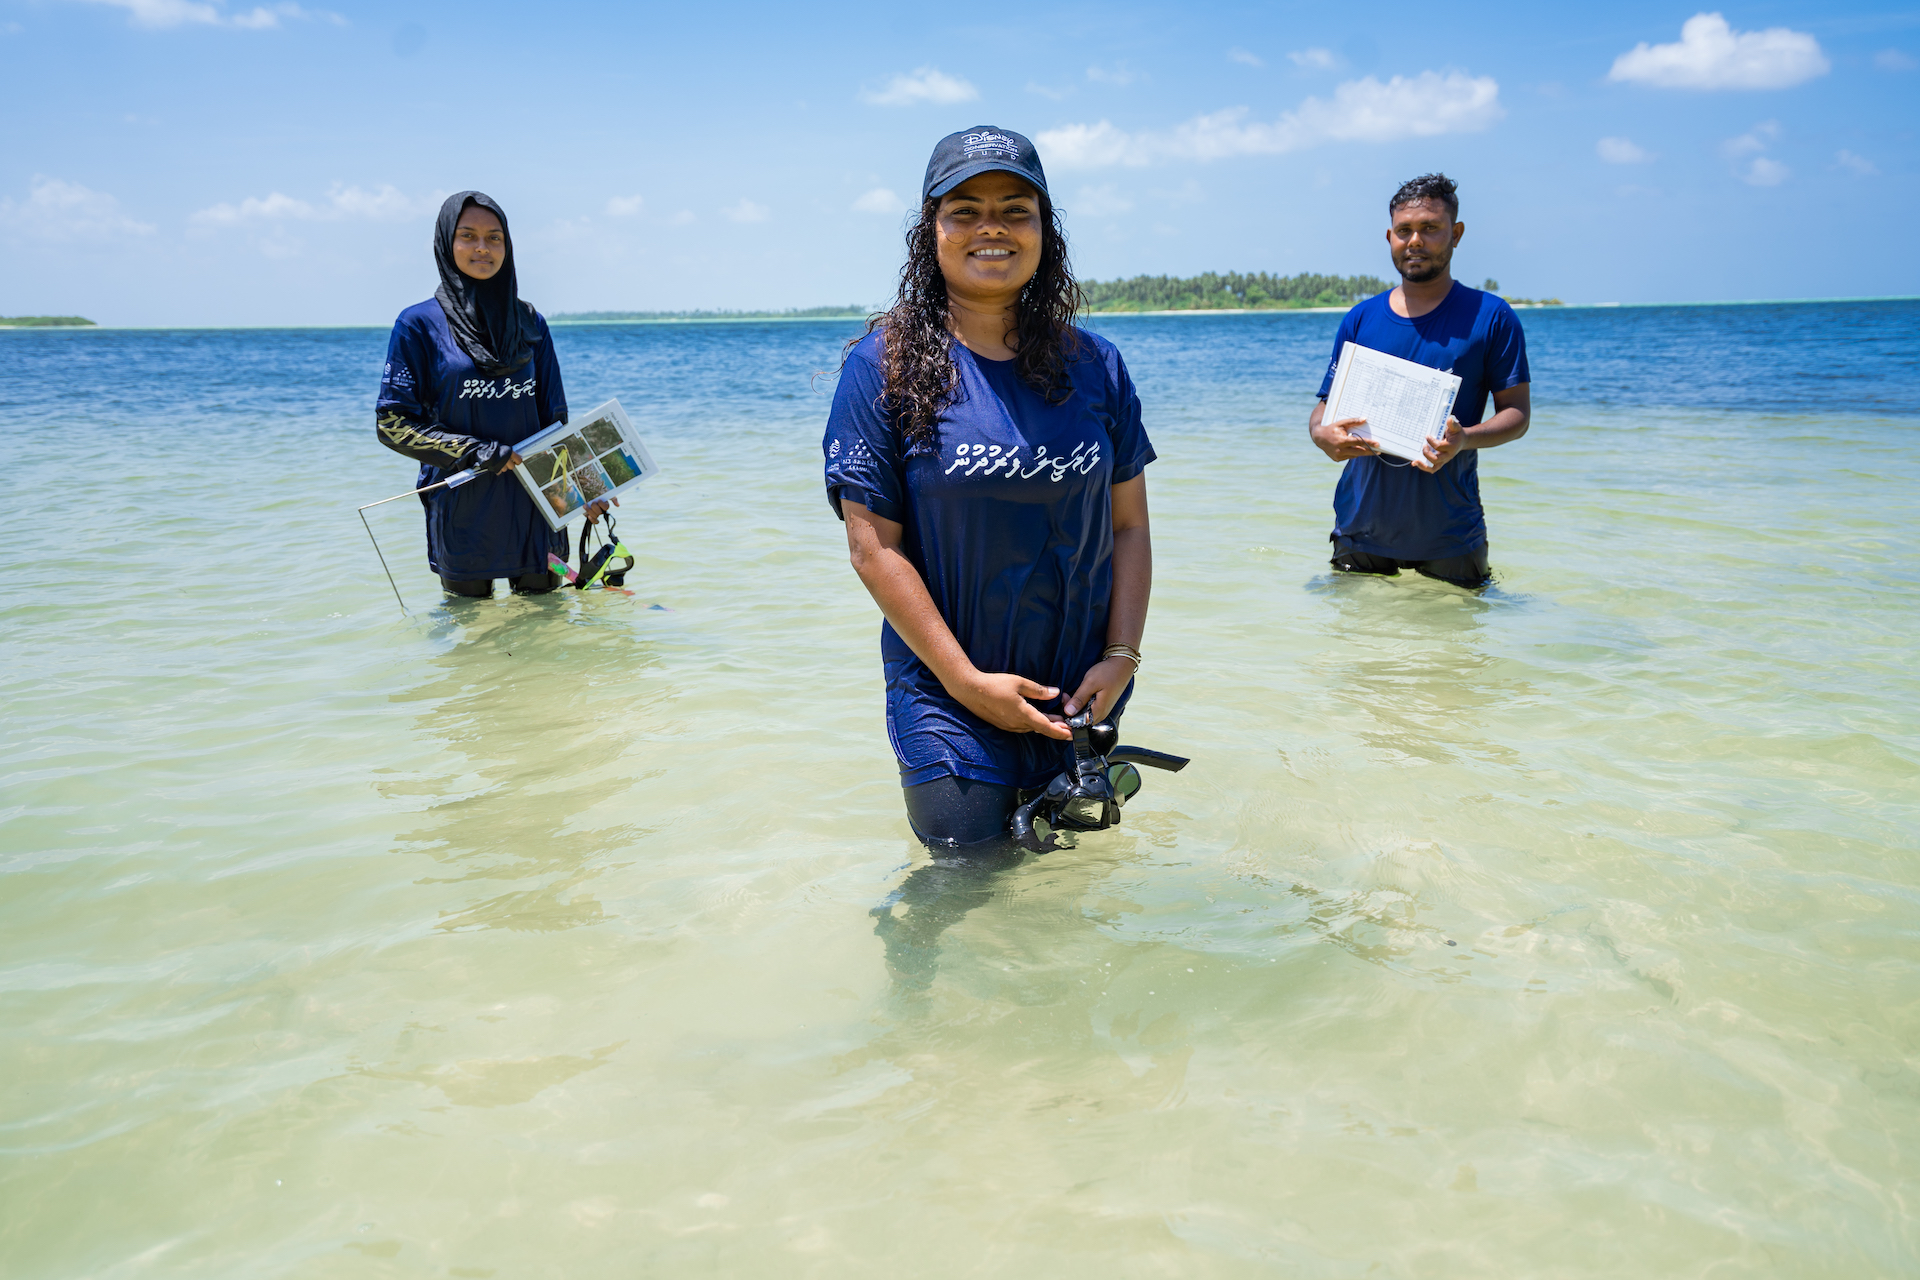 Shaha Hashim guides citizen scientists doing ocean surveys